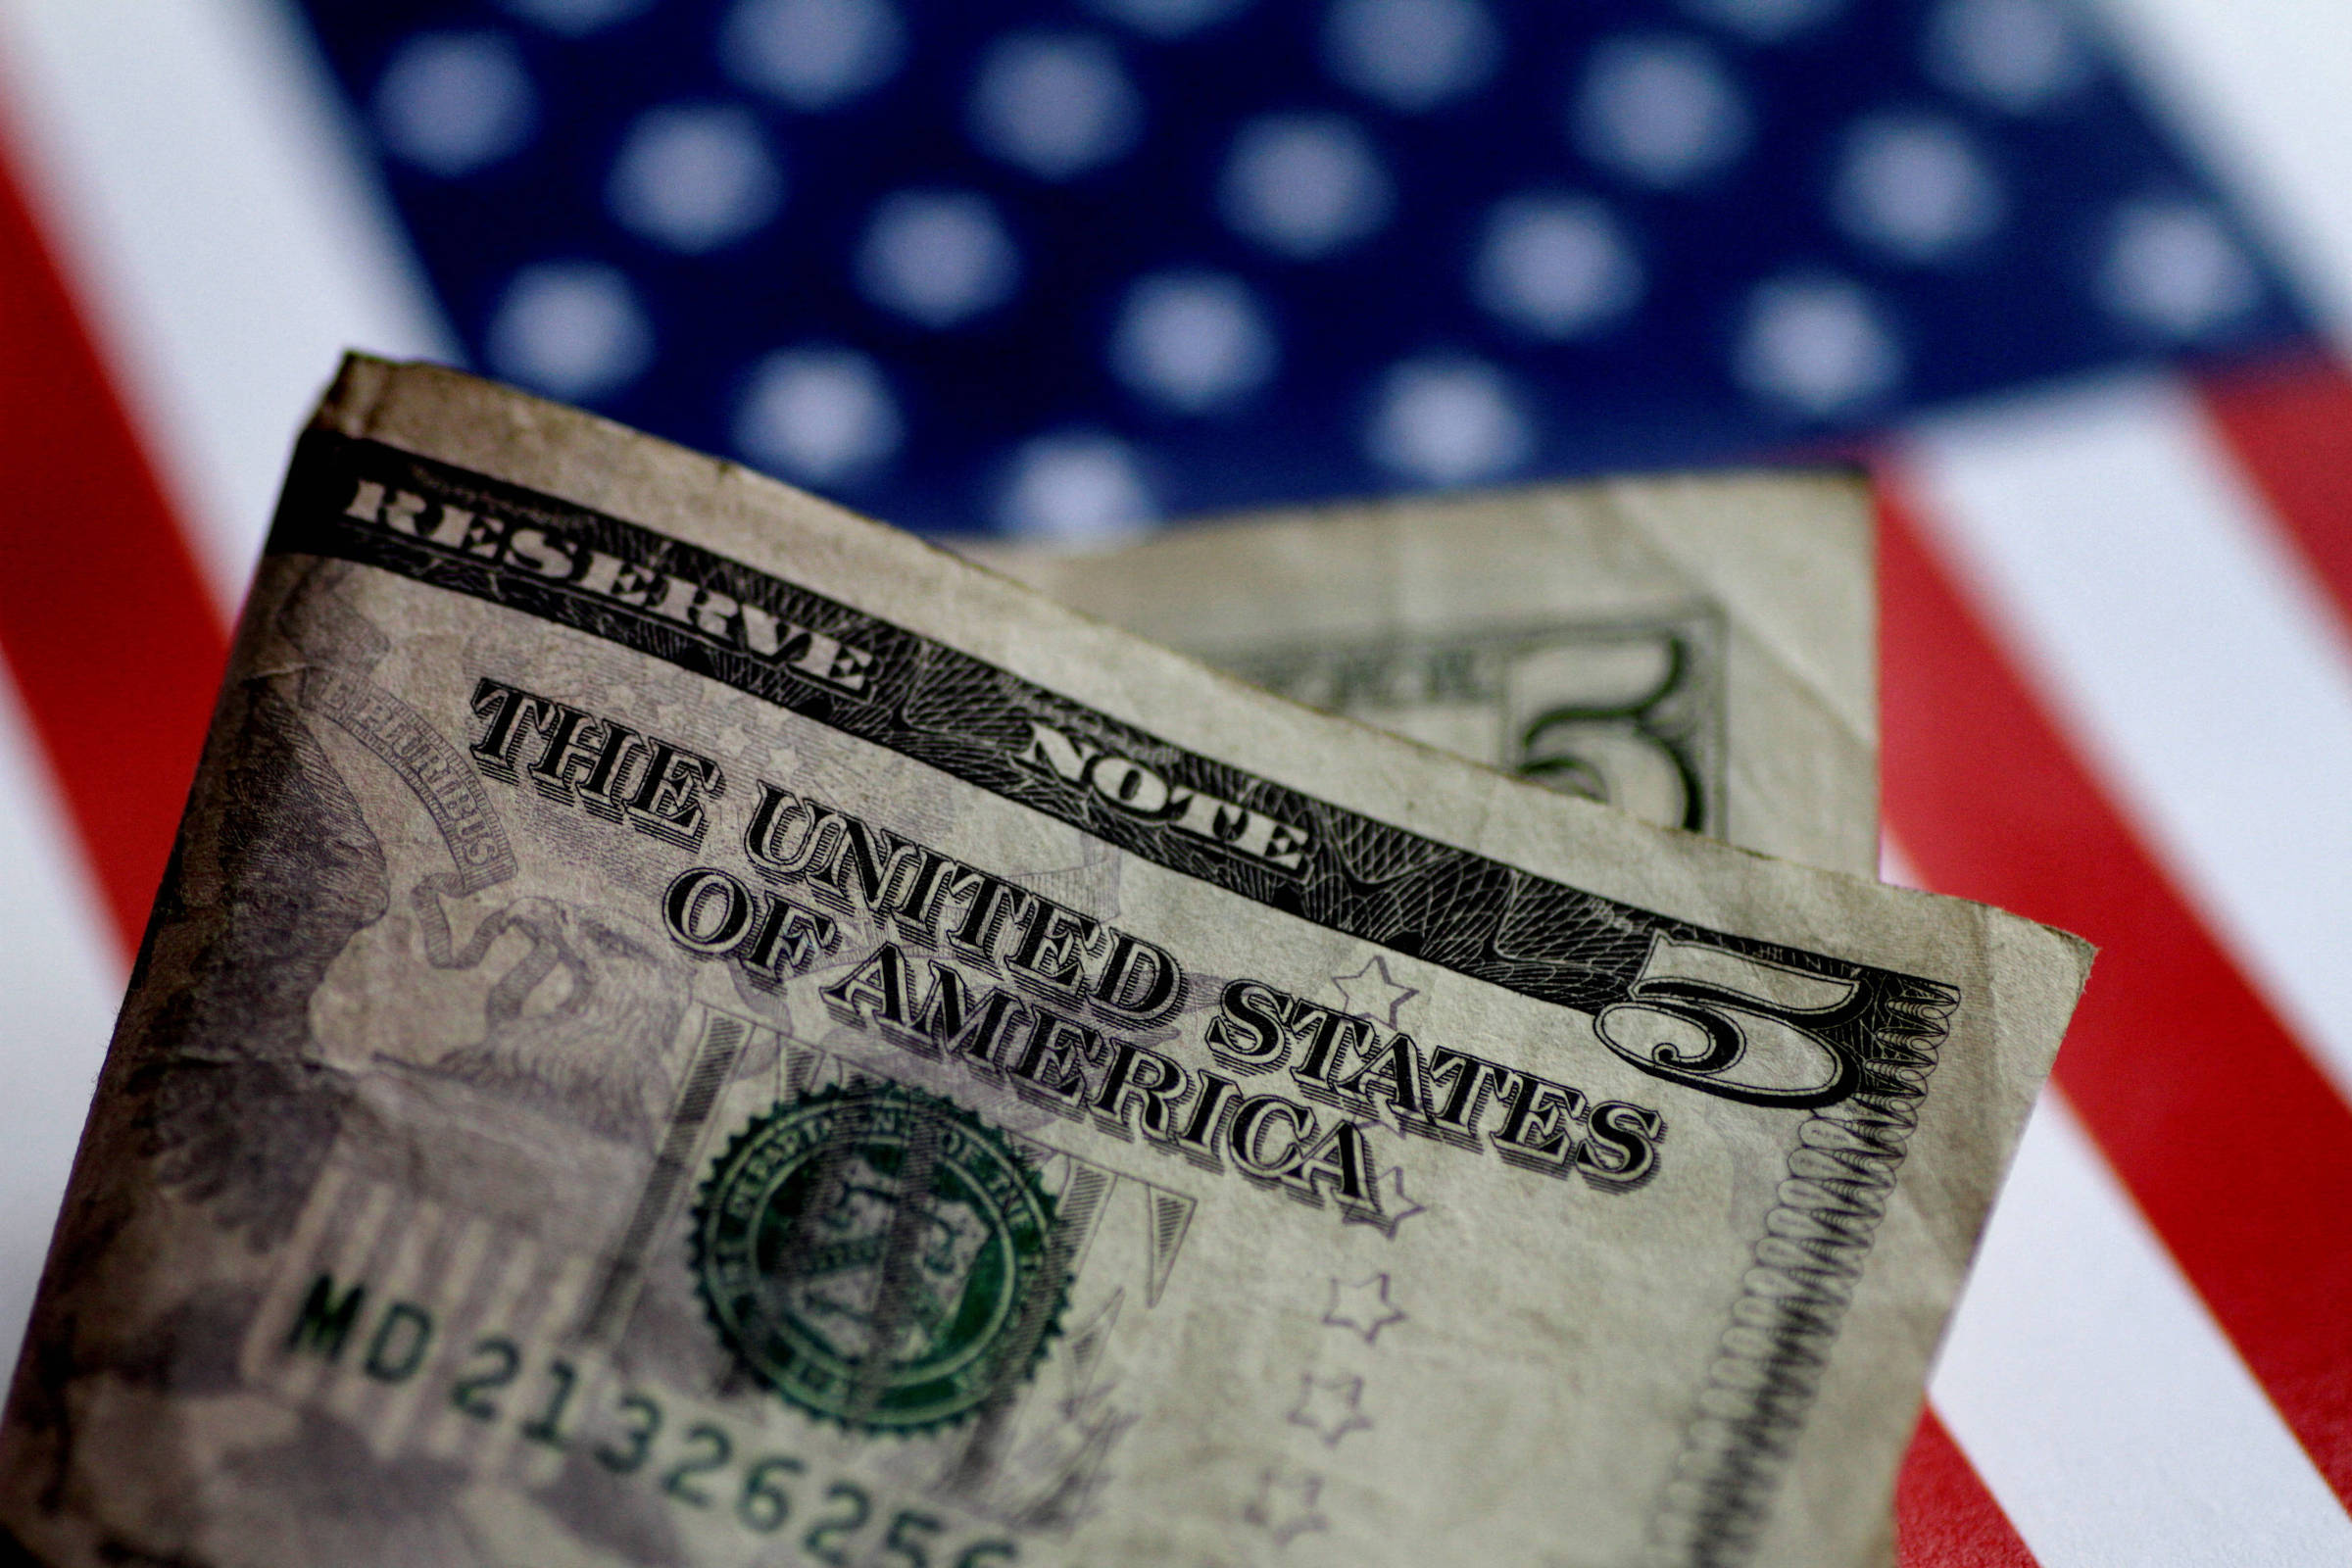 Notas de Dólar Americano: Conheça as diferenças - Blog Grupo Executive